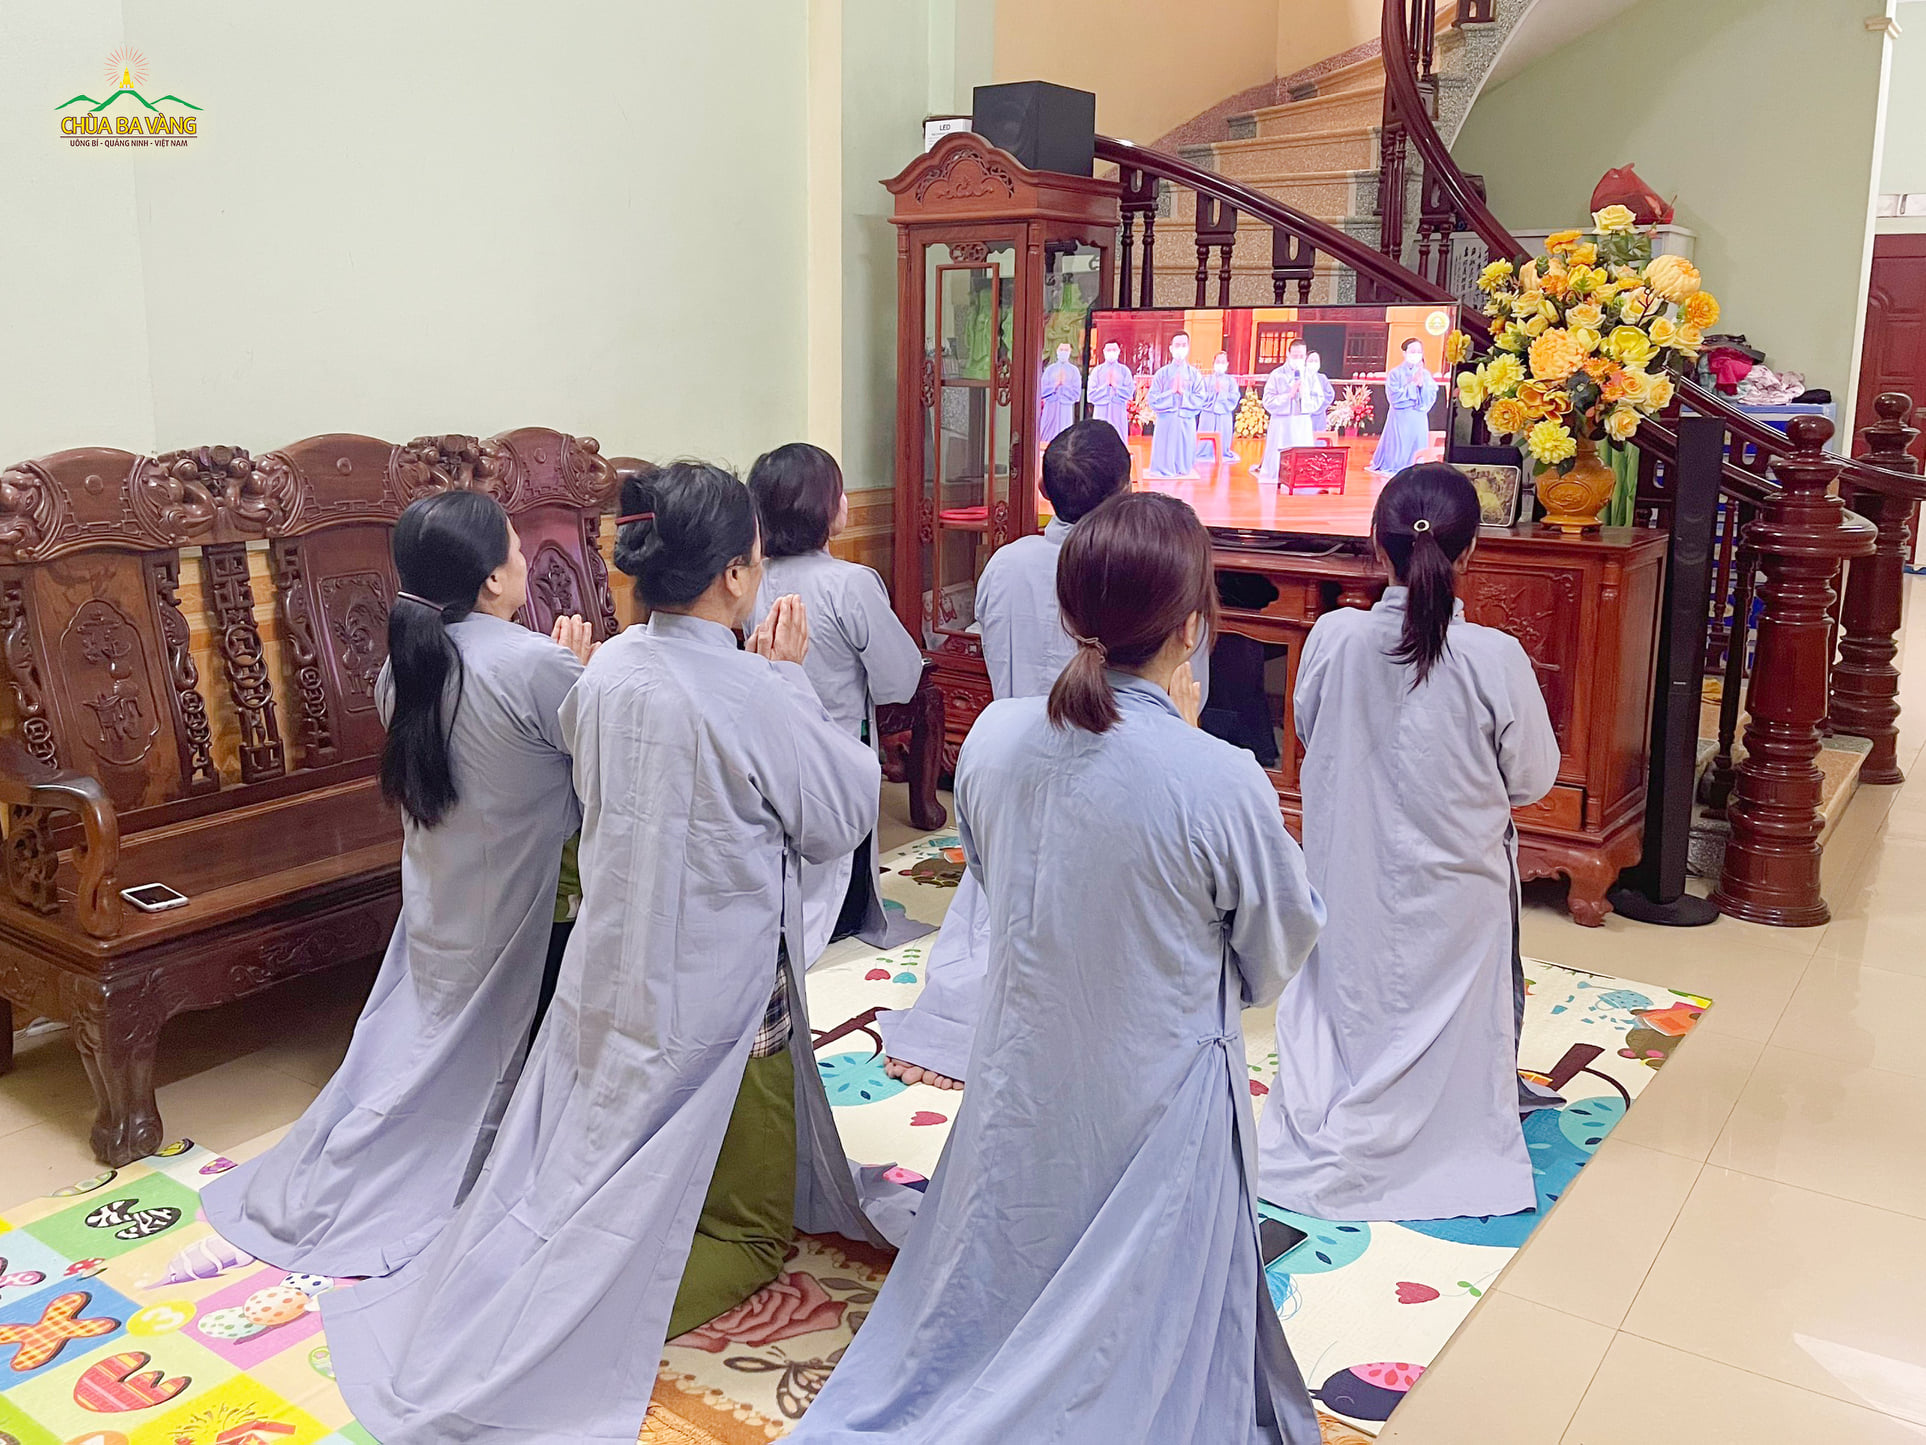 Tại địa phương đảm bảo an toàn về dịch, các Phật tử tập trung thành nhóm nhỏ để cùng nhau tham gia chương trình kết đàn tu tập cầu an trong đại dịch